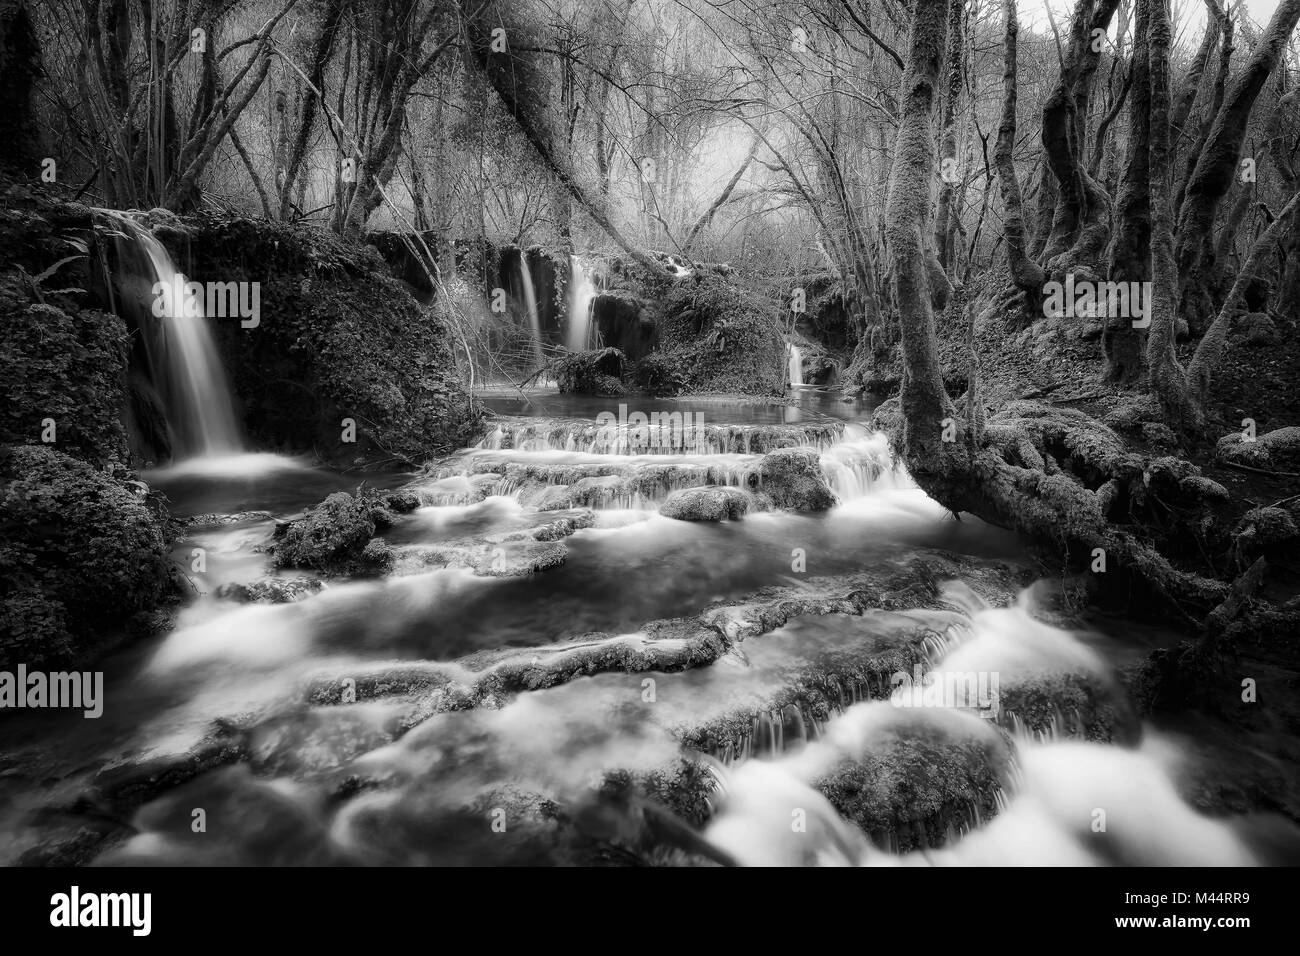 Chutes d'eau près de la source de la rivière Aniene, dans la municipalité de Trevi nel Lazio, Italie. L'eau passe à travers de petits gradients et formes s Banque D'Images